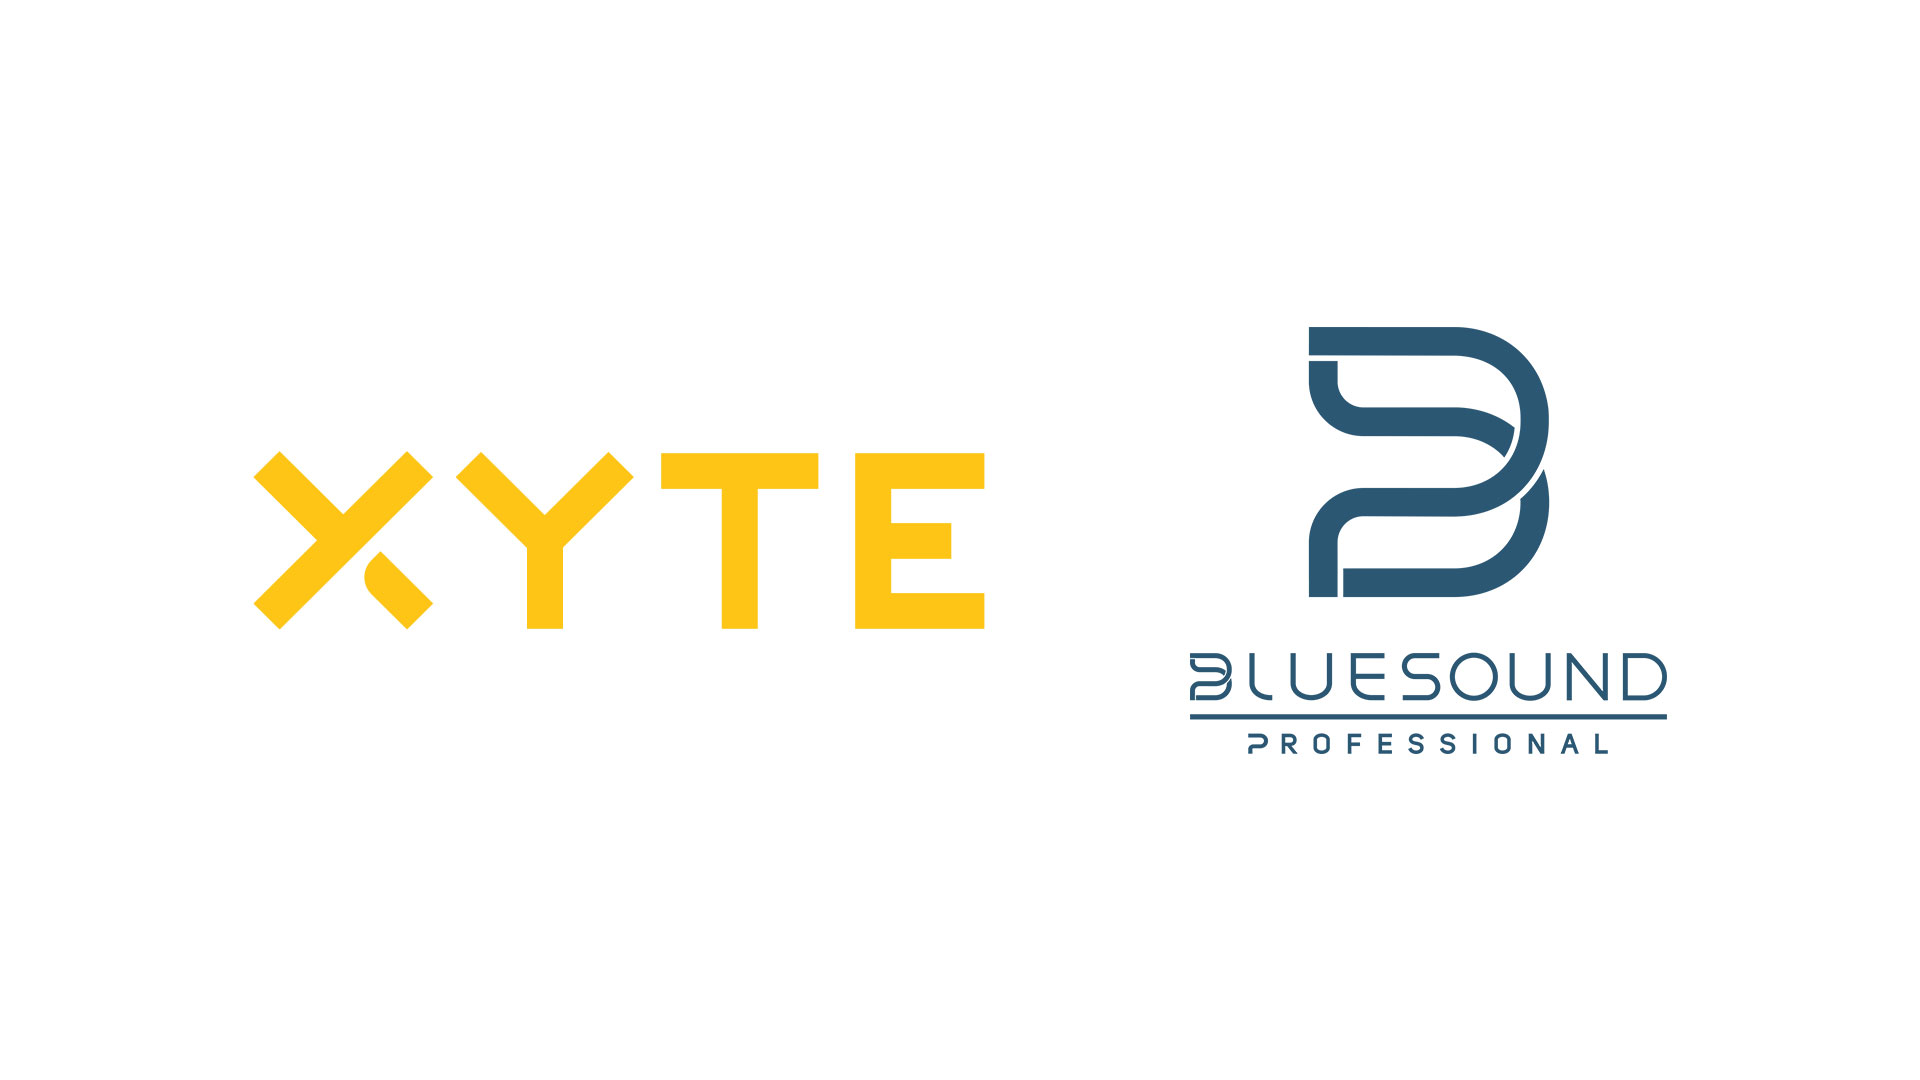 Bluesound Professional and XYTE logos (partnership)